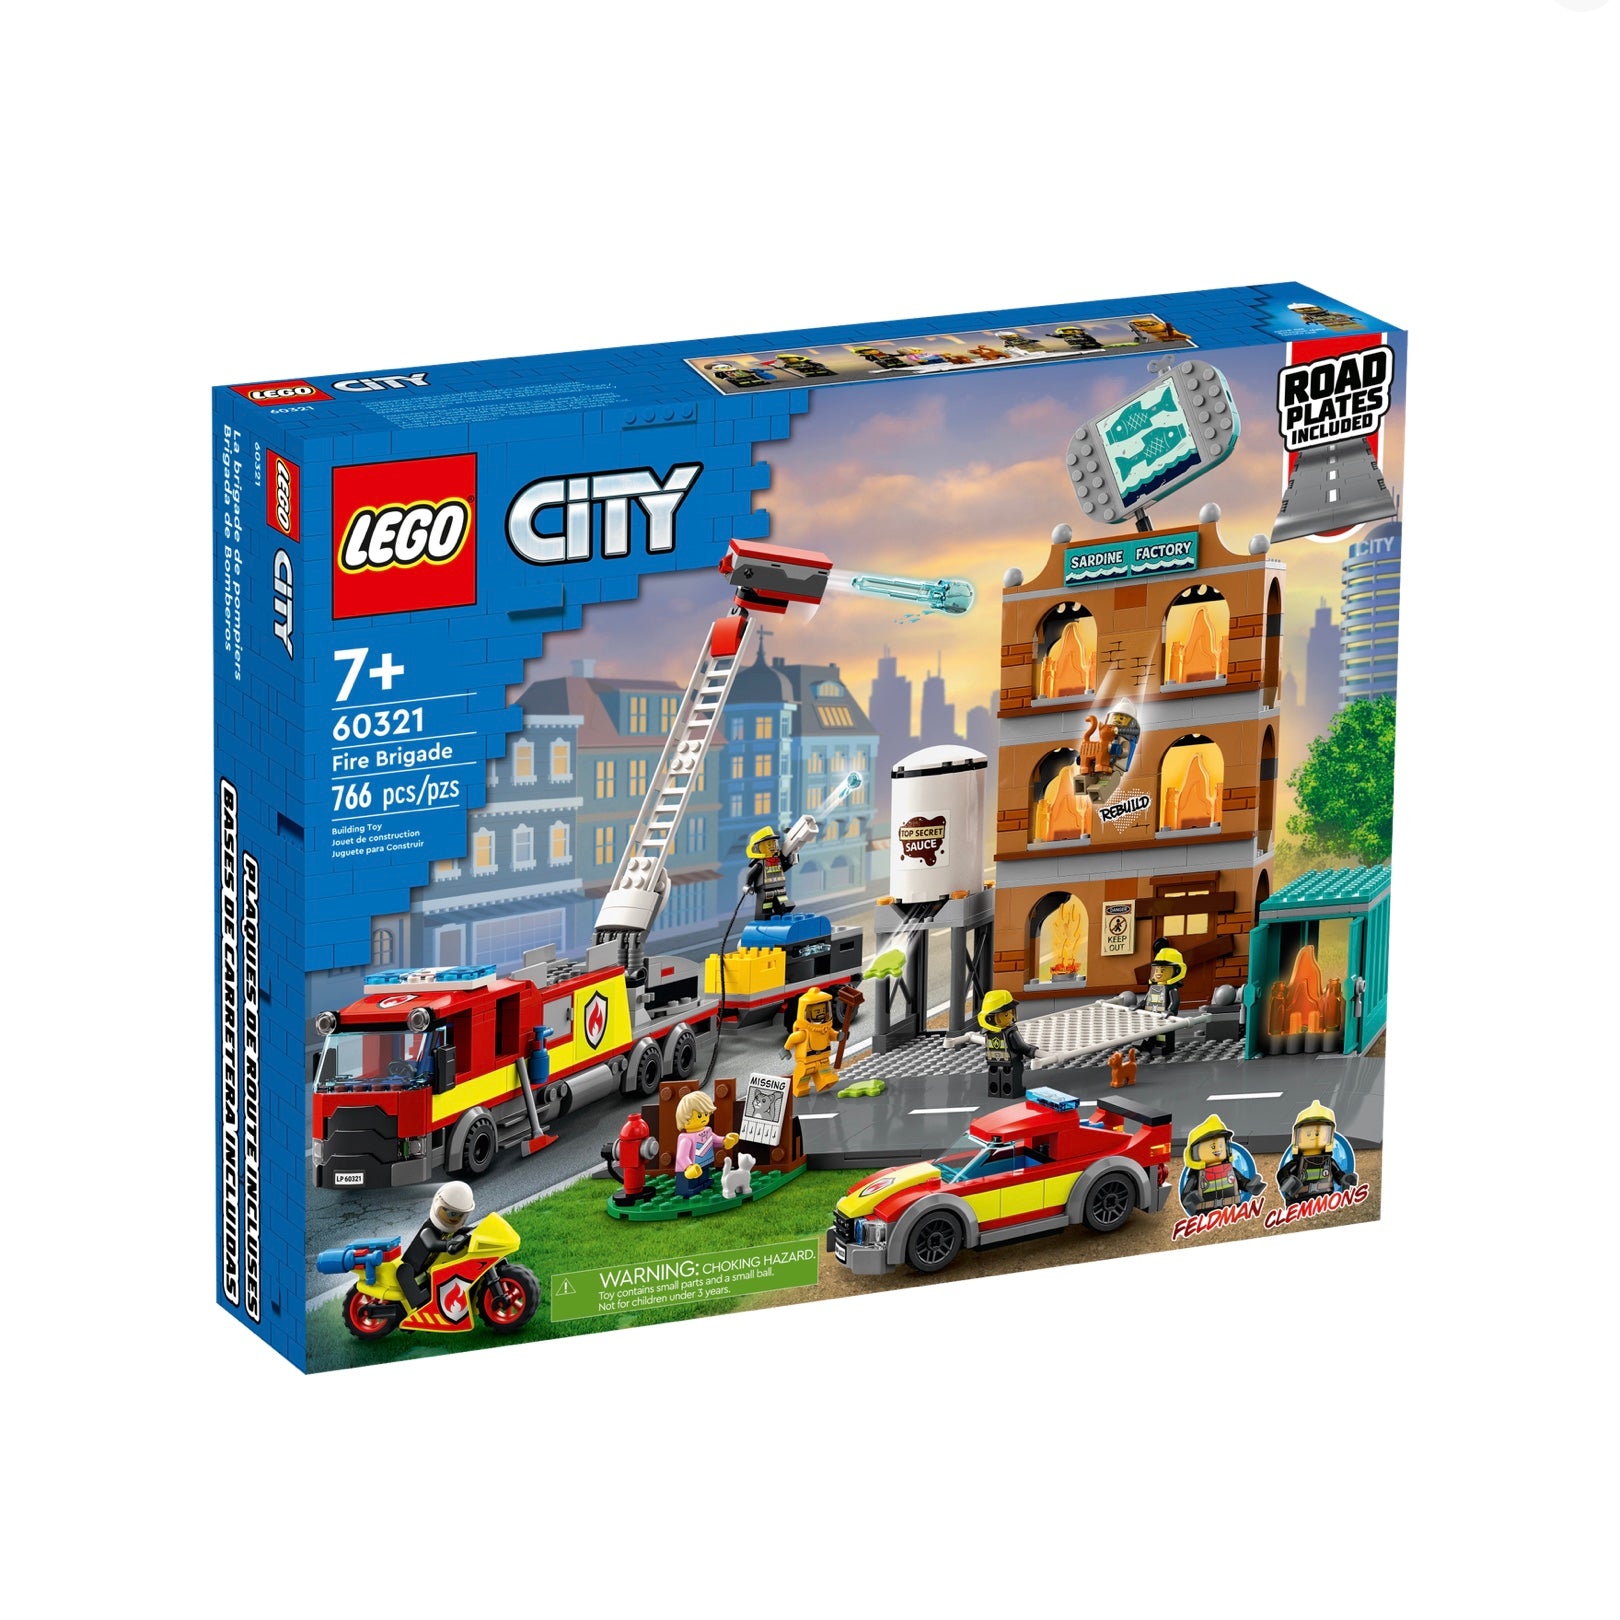 60321 City Fire Brigade